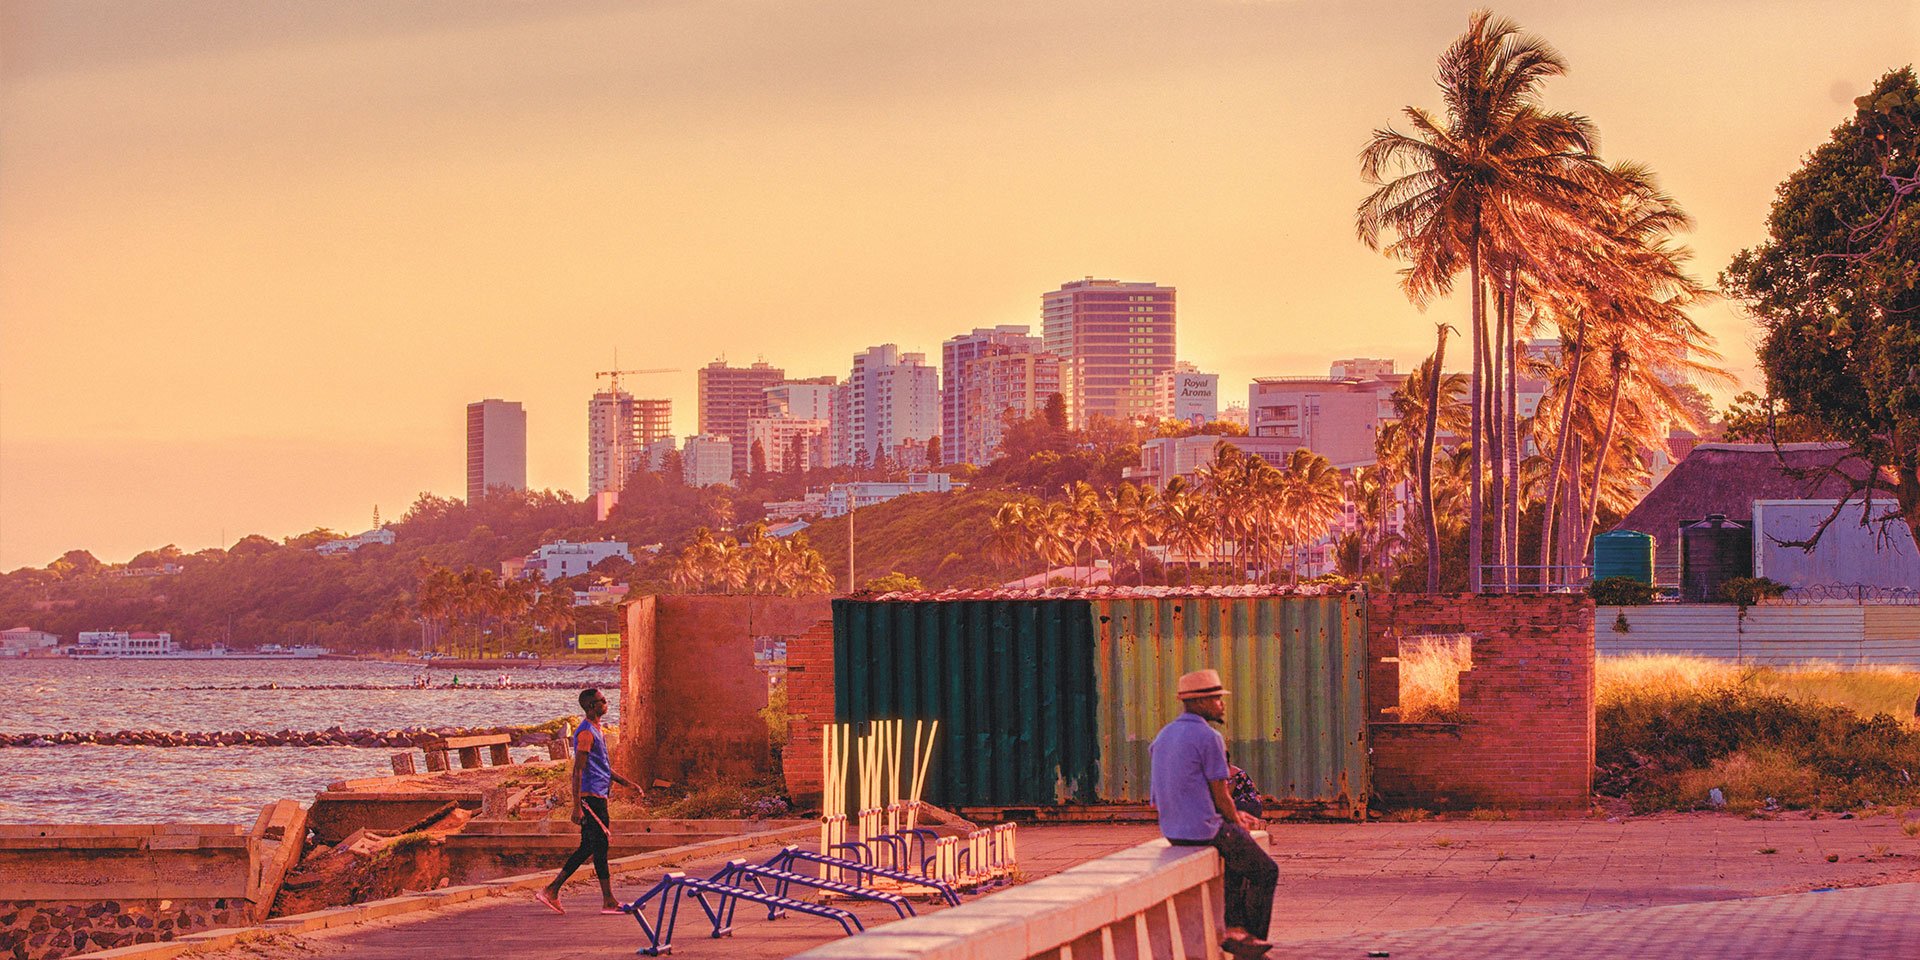 cityscape in mozambique